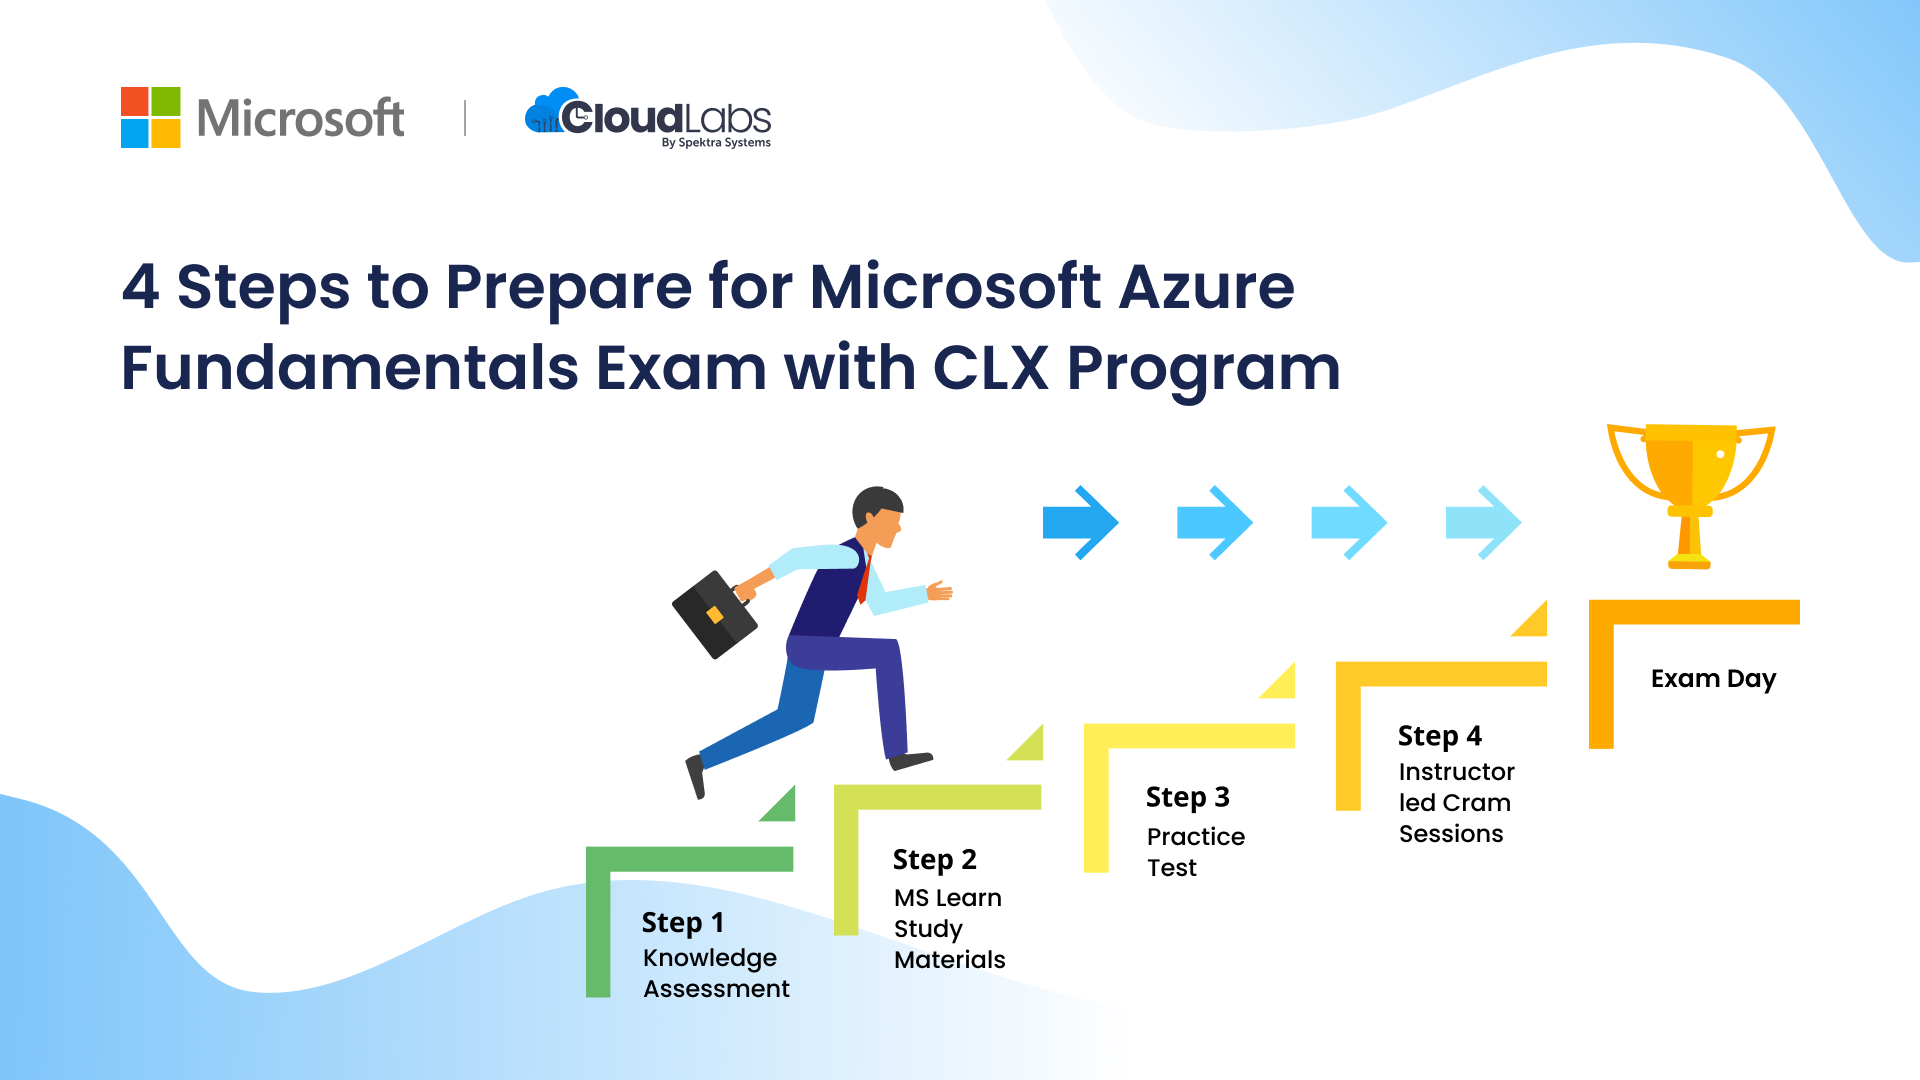 Prepare for Microsoft Azure Fundamentals exam with CLX program